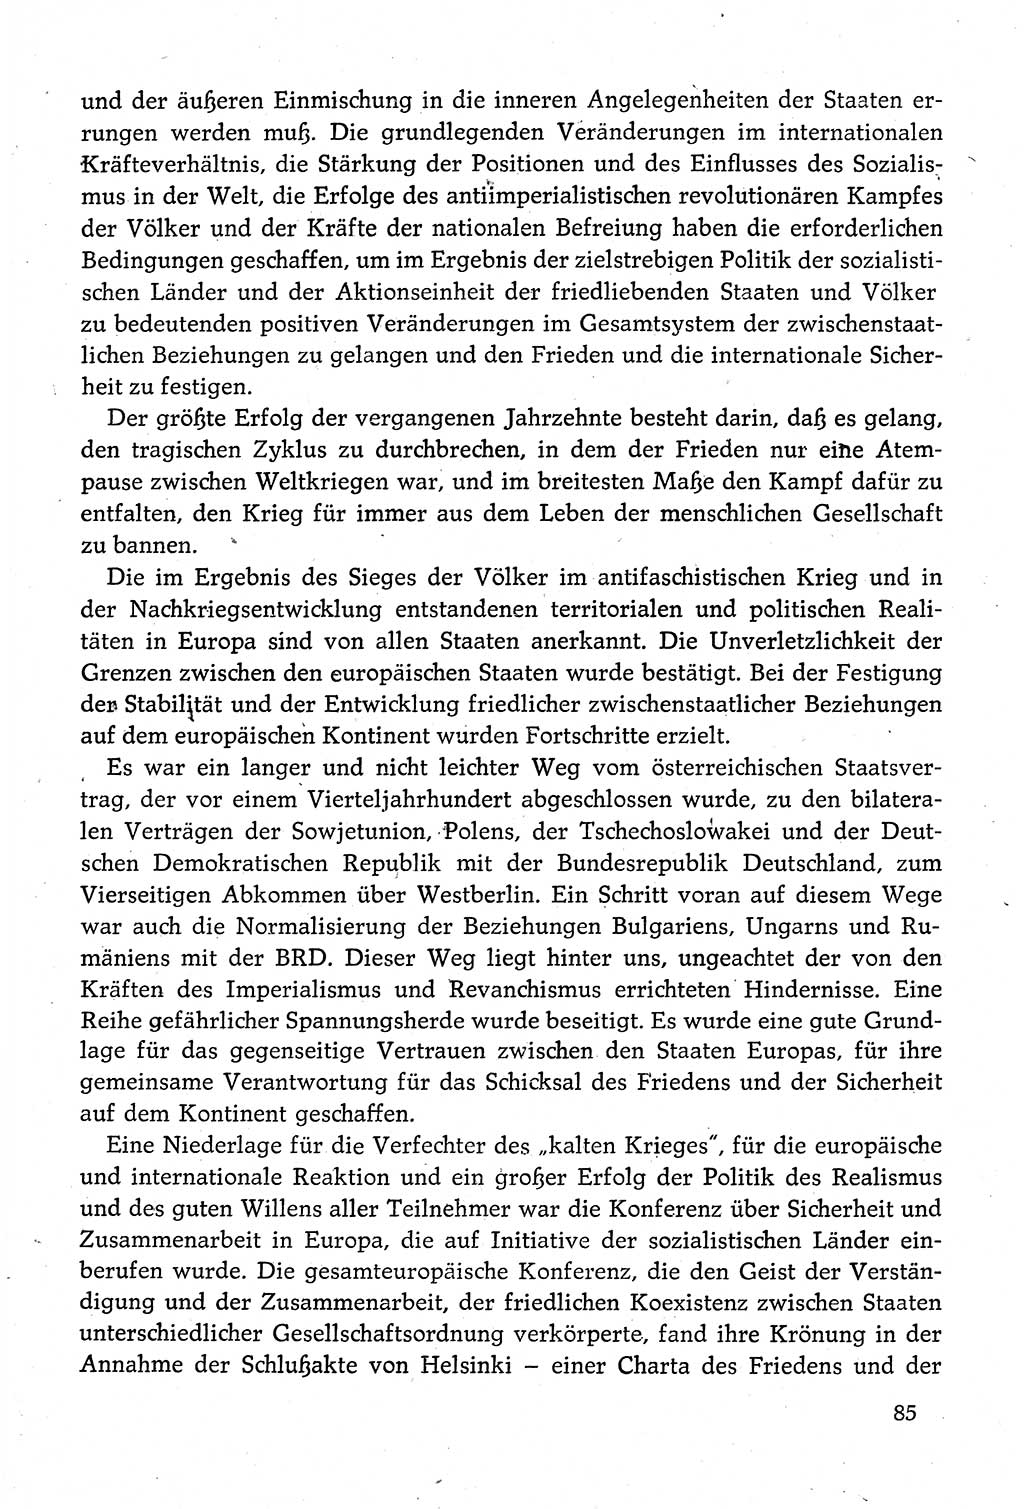 Dokumente der Sozialistischen Einheitspartei Deutschlands (SED) [Deutsche Demokratische Republik (DDR)] 1980-1981, Seite 85 (Dok. SED DDR 1980-1981, S. 85)